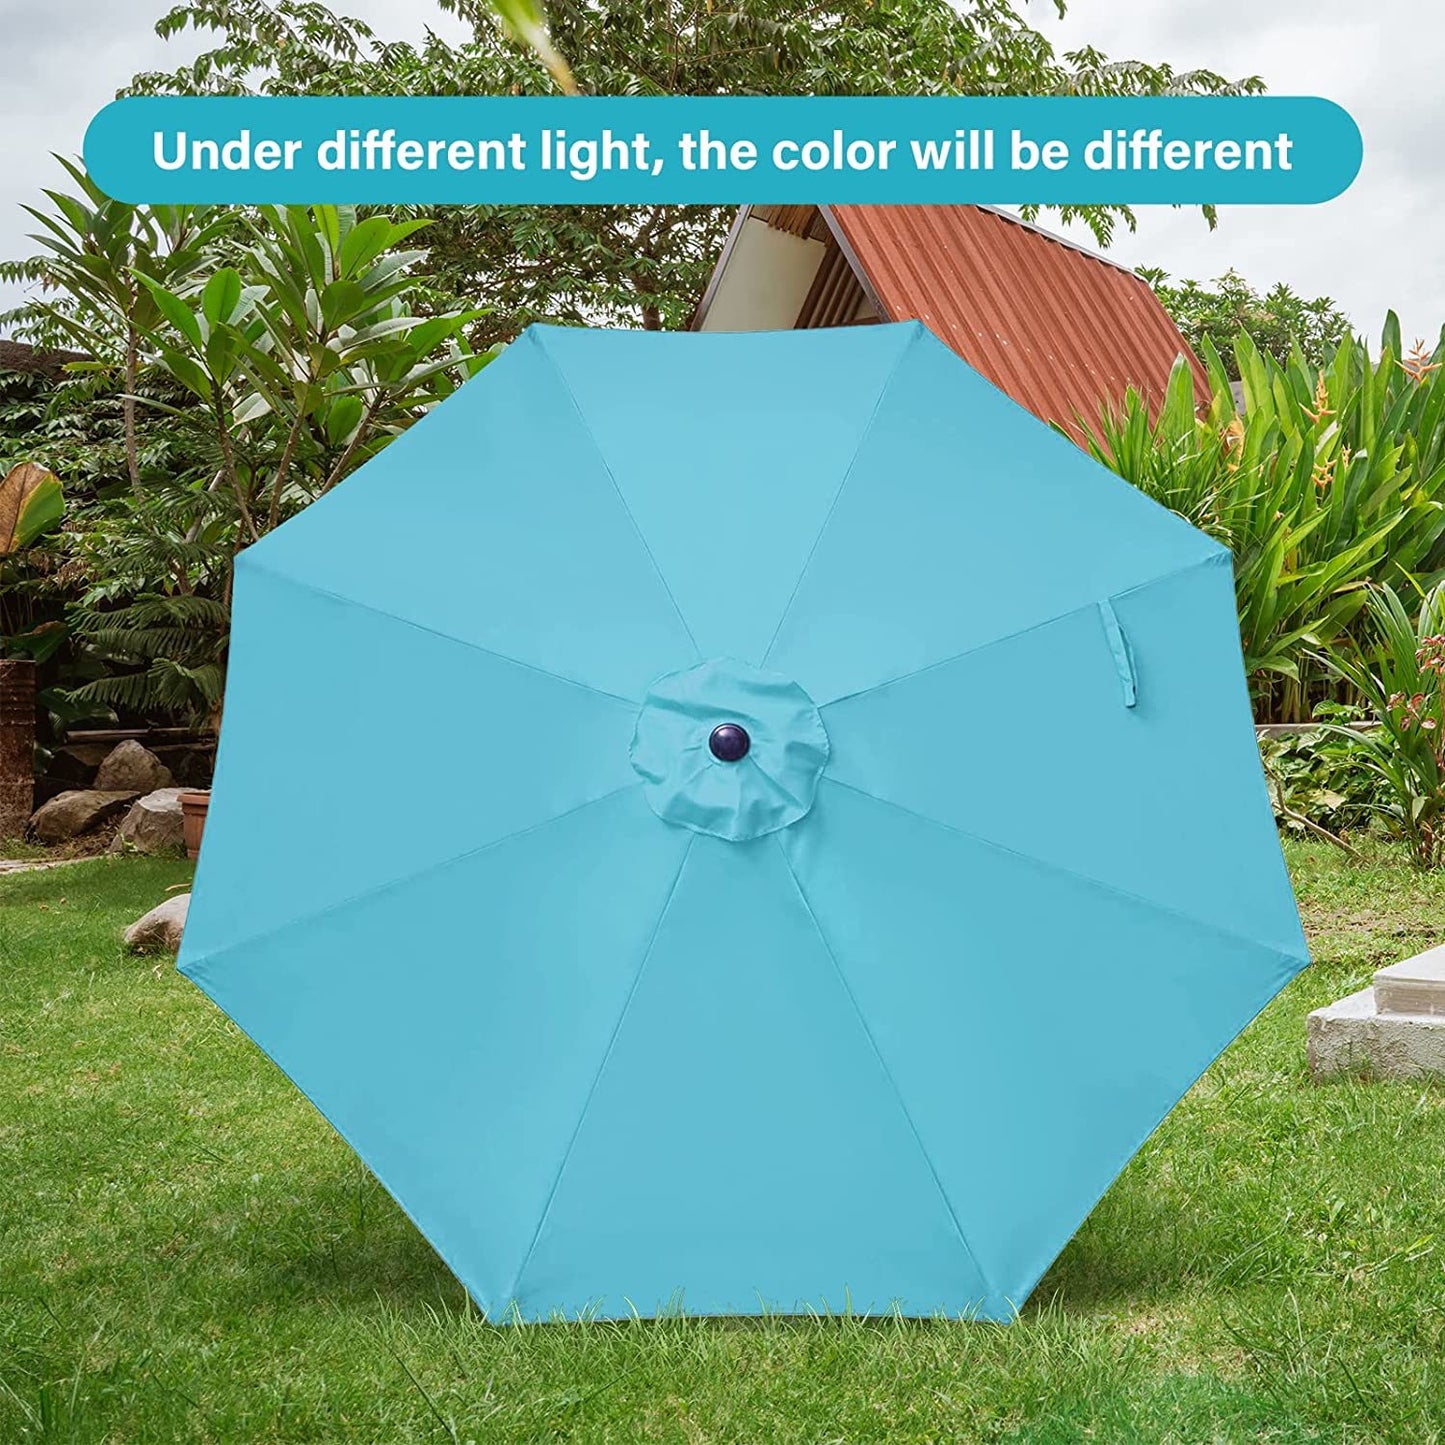 Simple Deluxe 9' Outdoor Patio Umbrella